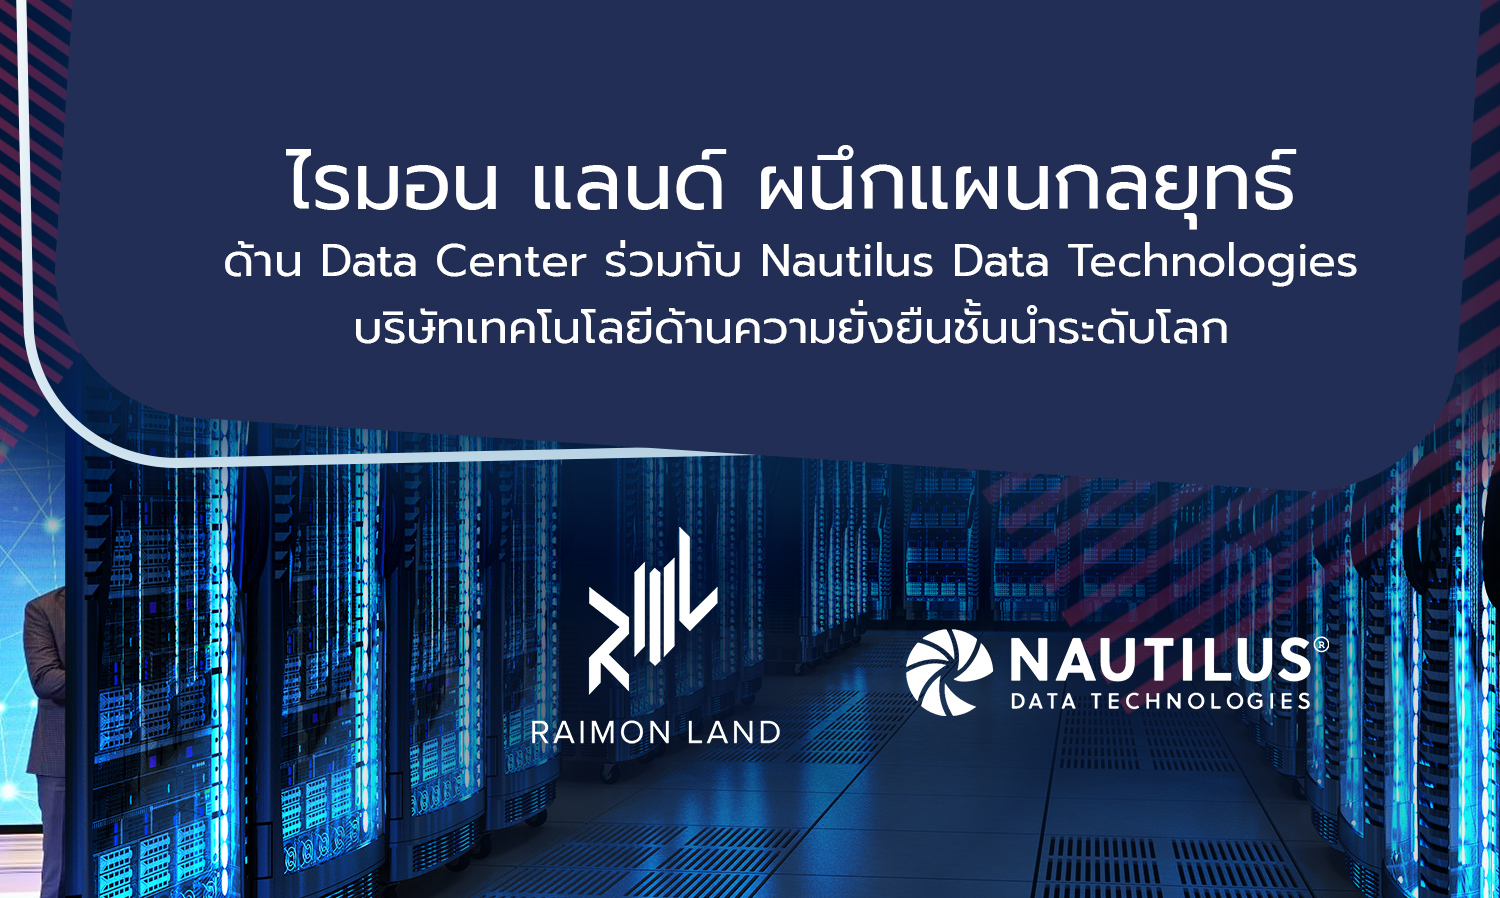 ไรมอน-แลนด์-ผนึกแผนกลยุทธ์ด้าน-data-center-ร่วมกับ-nautilus-data-technologies-บริษัทเทคโนโลยีด้านความยั่งยืนชั้นนำระดับโลก